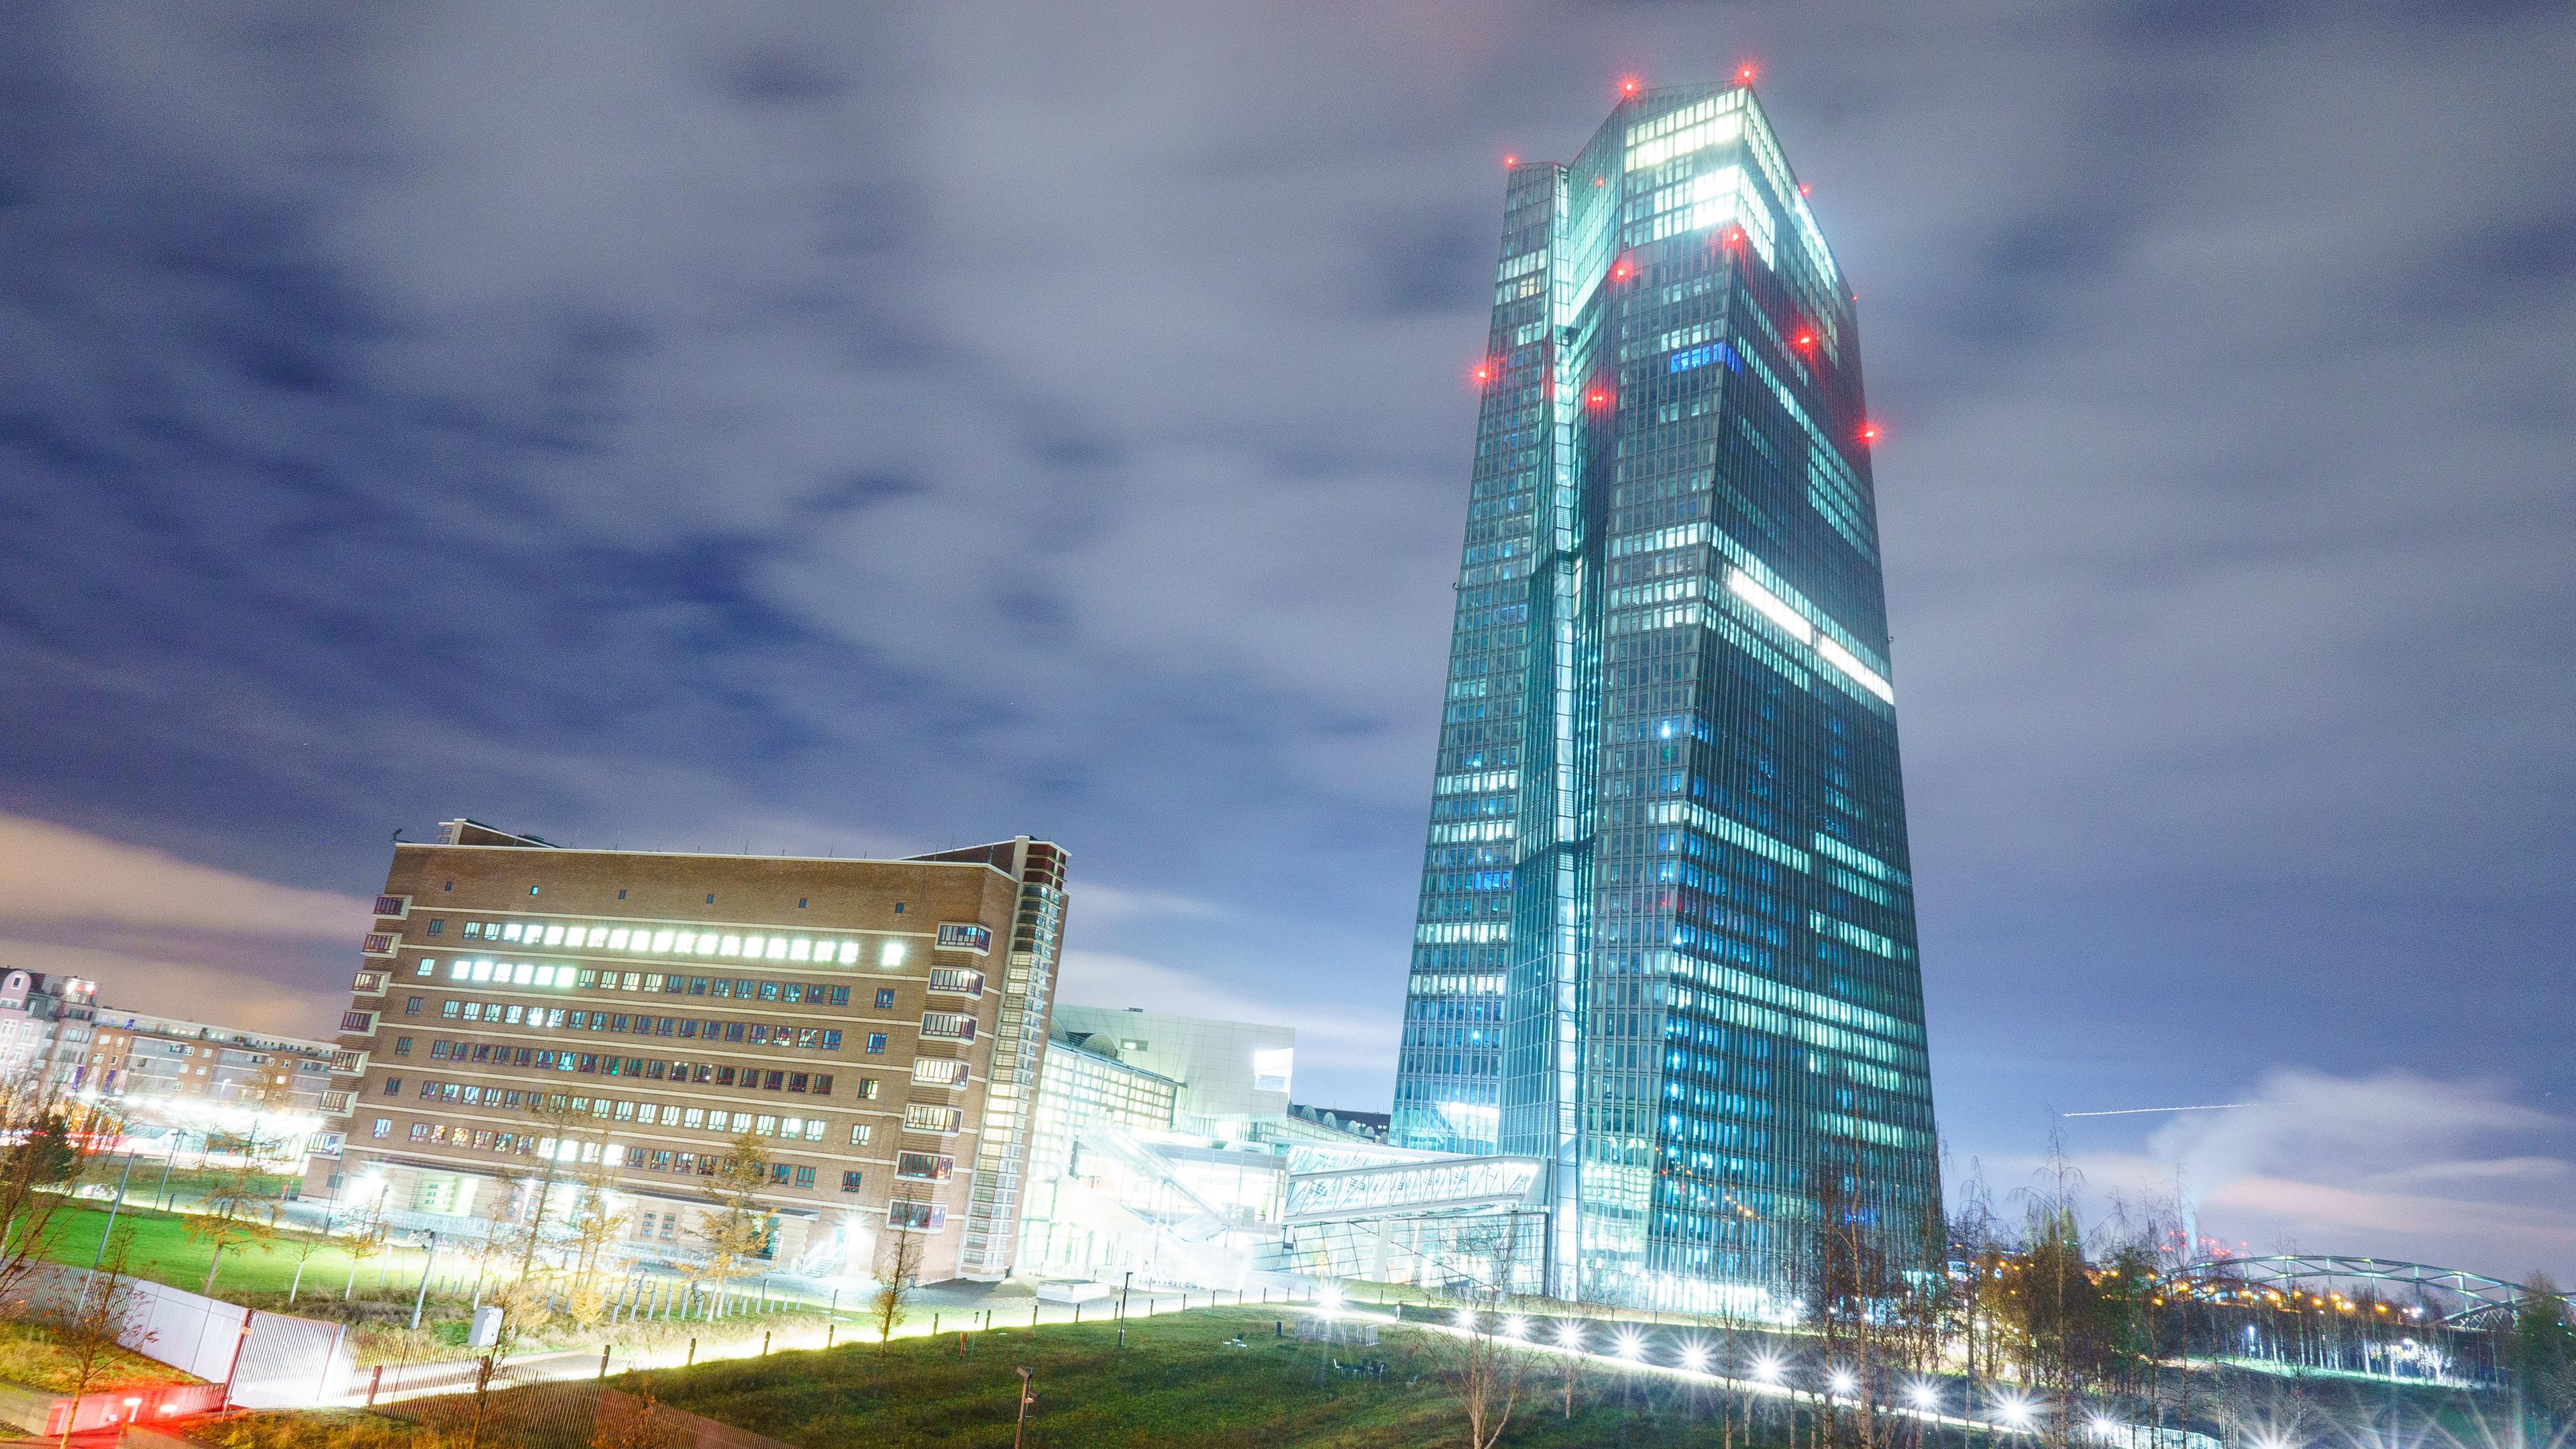 Hessen, Frankfurt/Main: Der Turm der Europäischen Zentralbank (EZB) ist in den frühen Morgenstunden hell erleuchtet.